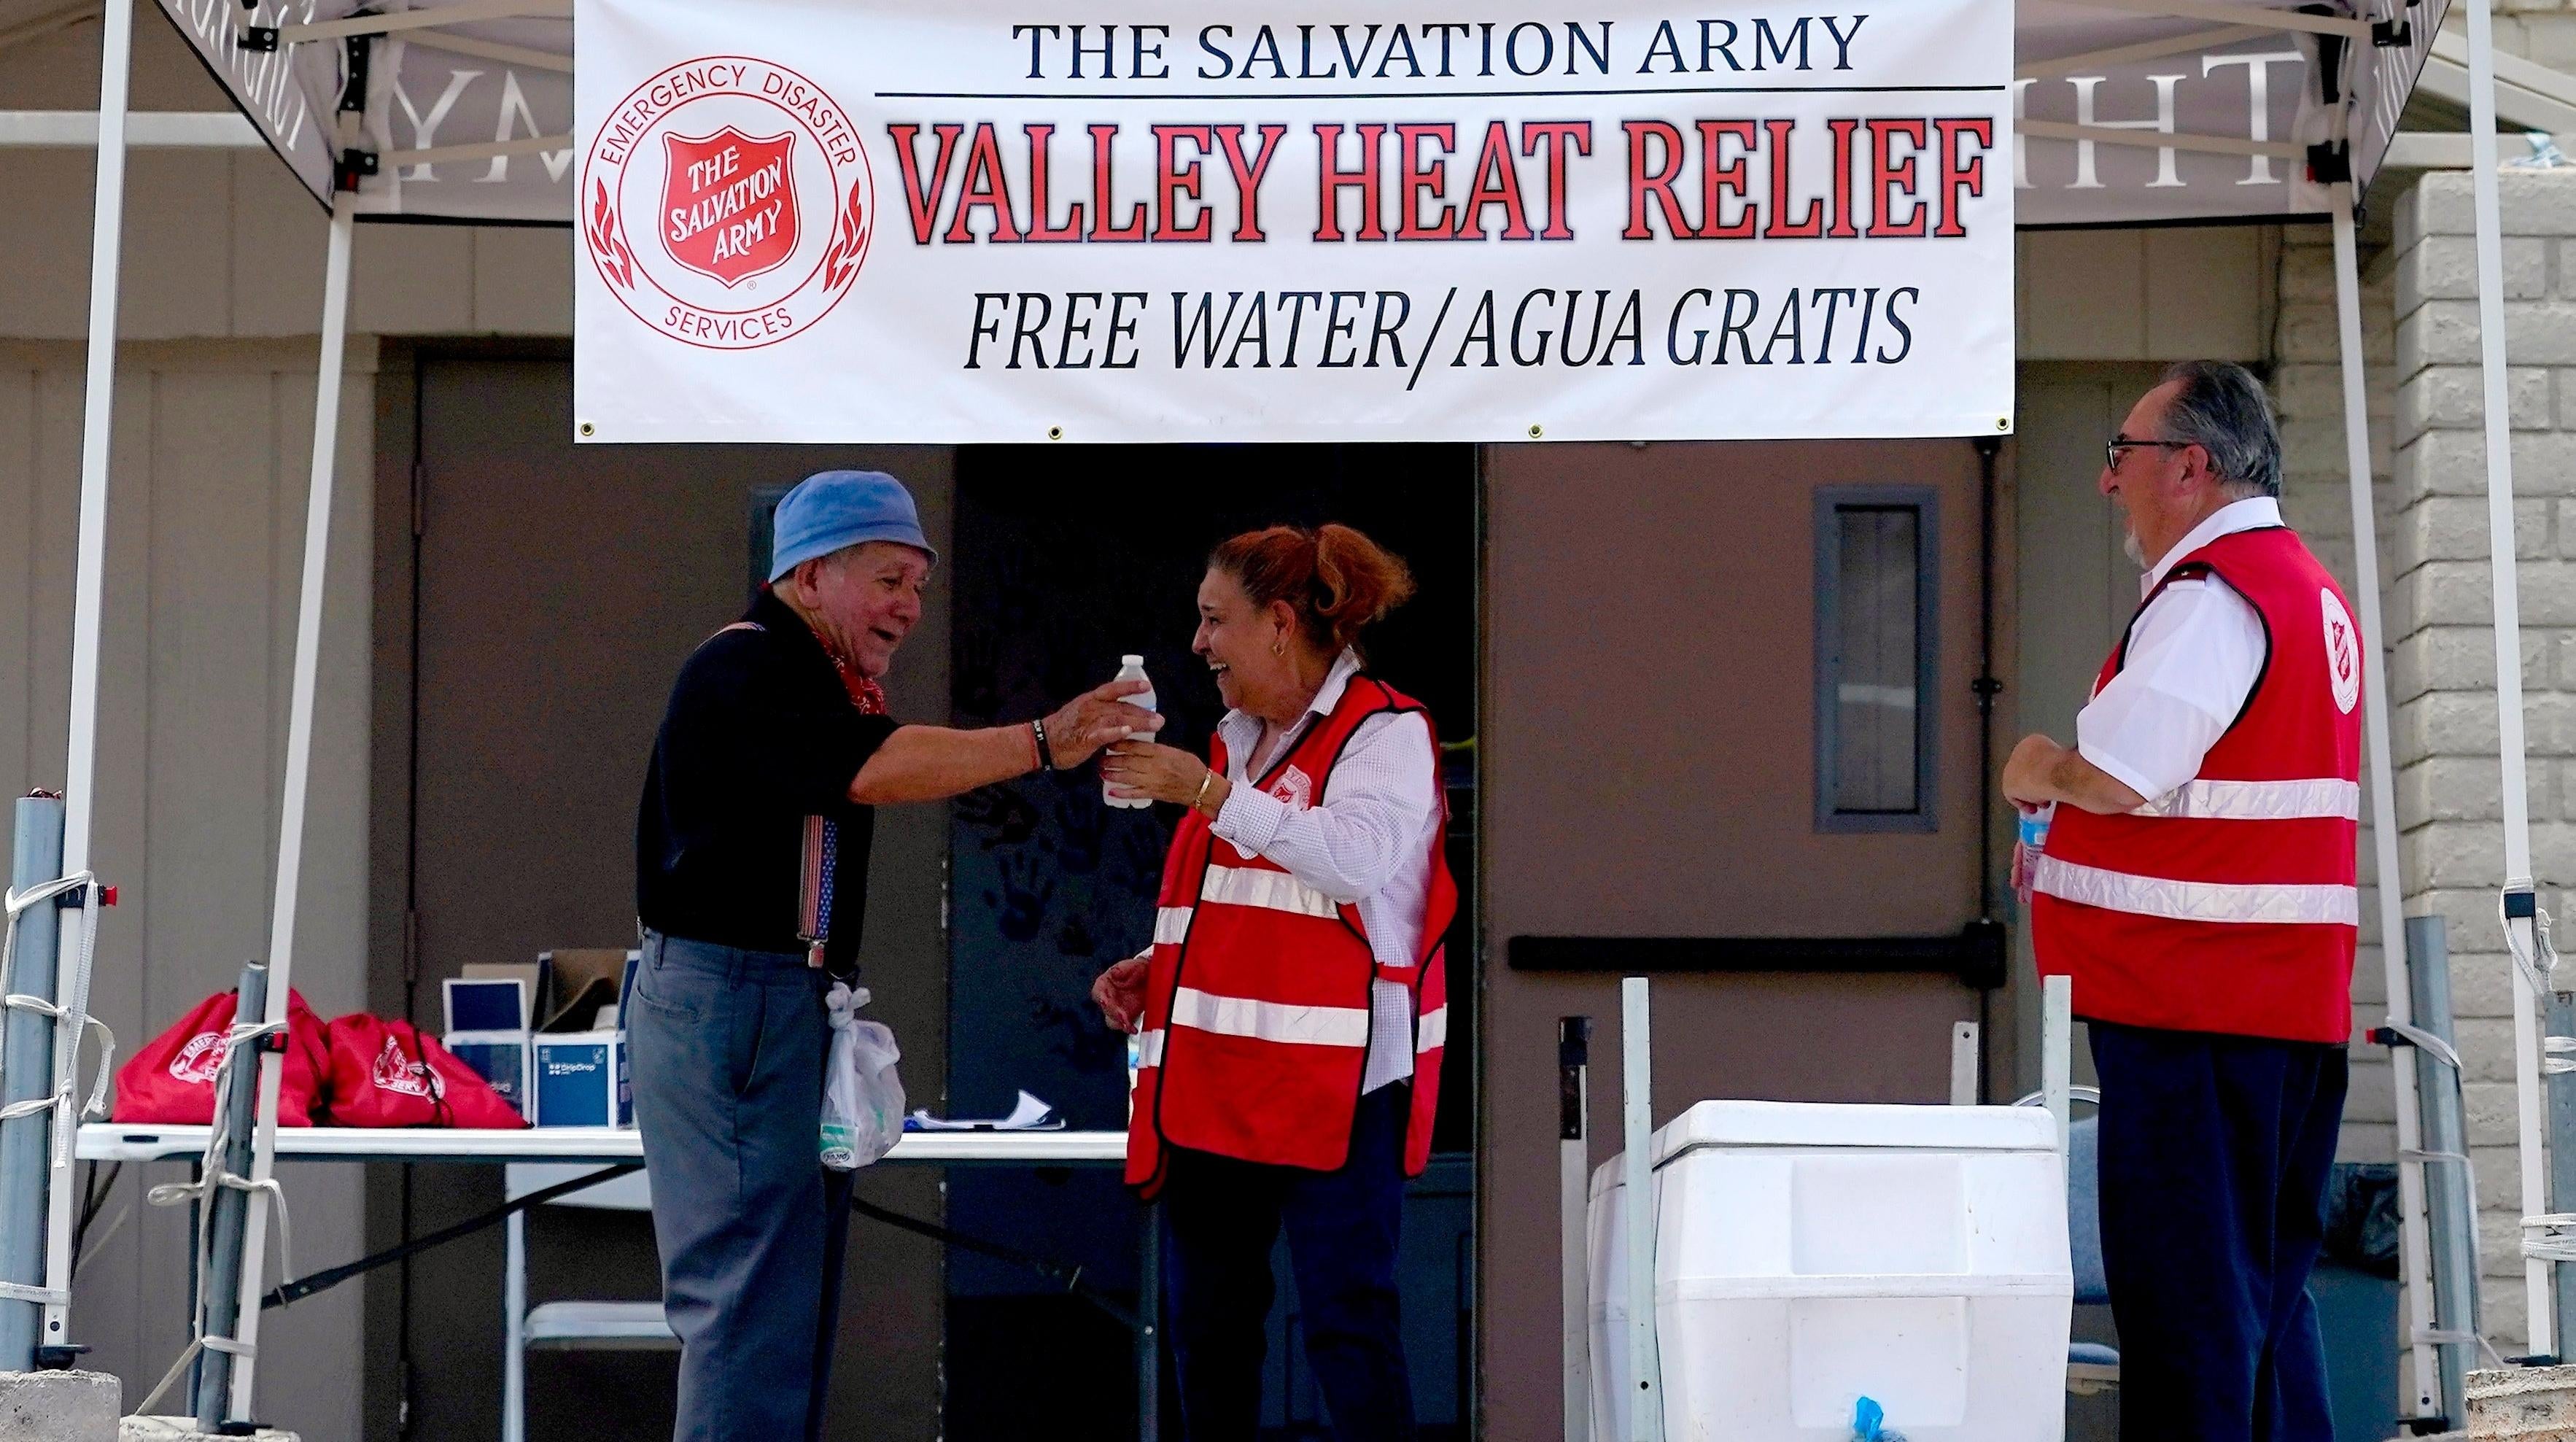 المتطوع في جيش الإنقاذ فرانسيسكا كورال ، في الوسط ، يعطي الماء لرجل في محطة فالي هيت ريليف الخاصة بهم ، في 11 يوليو 2023 في فينيكس.